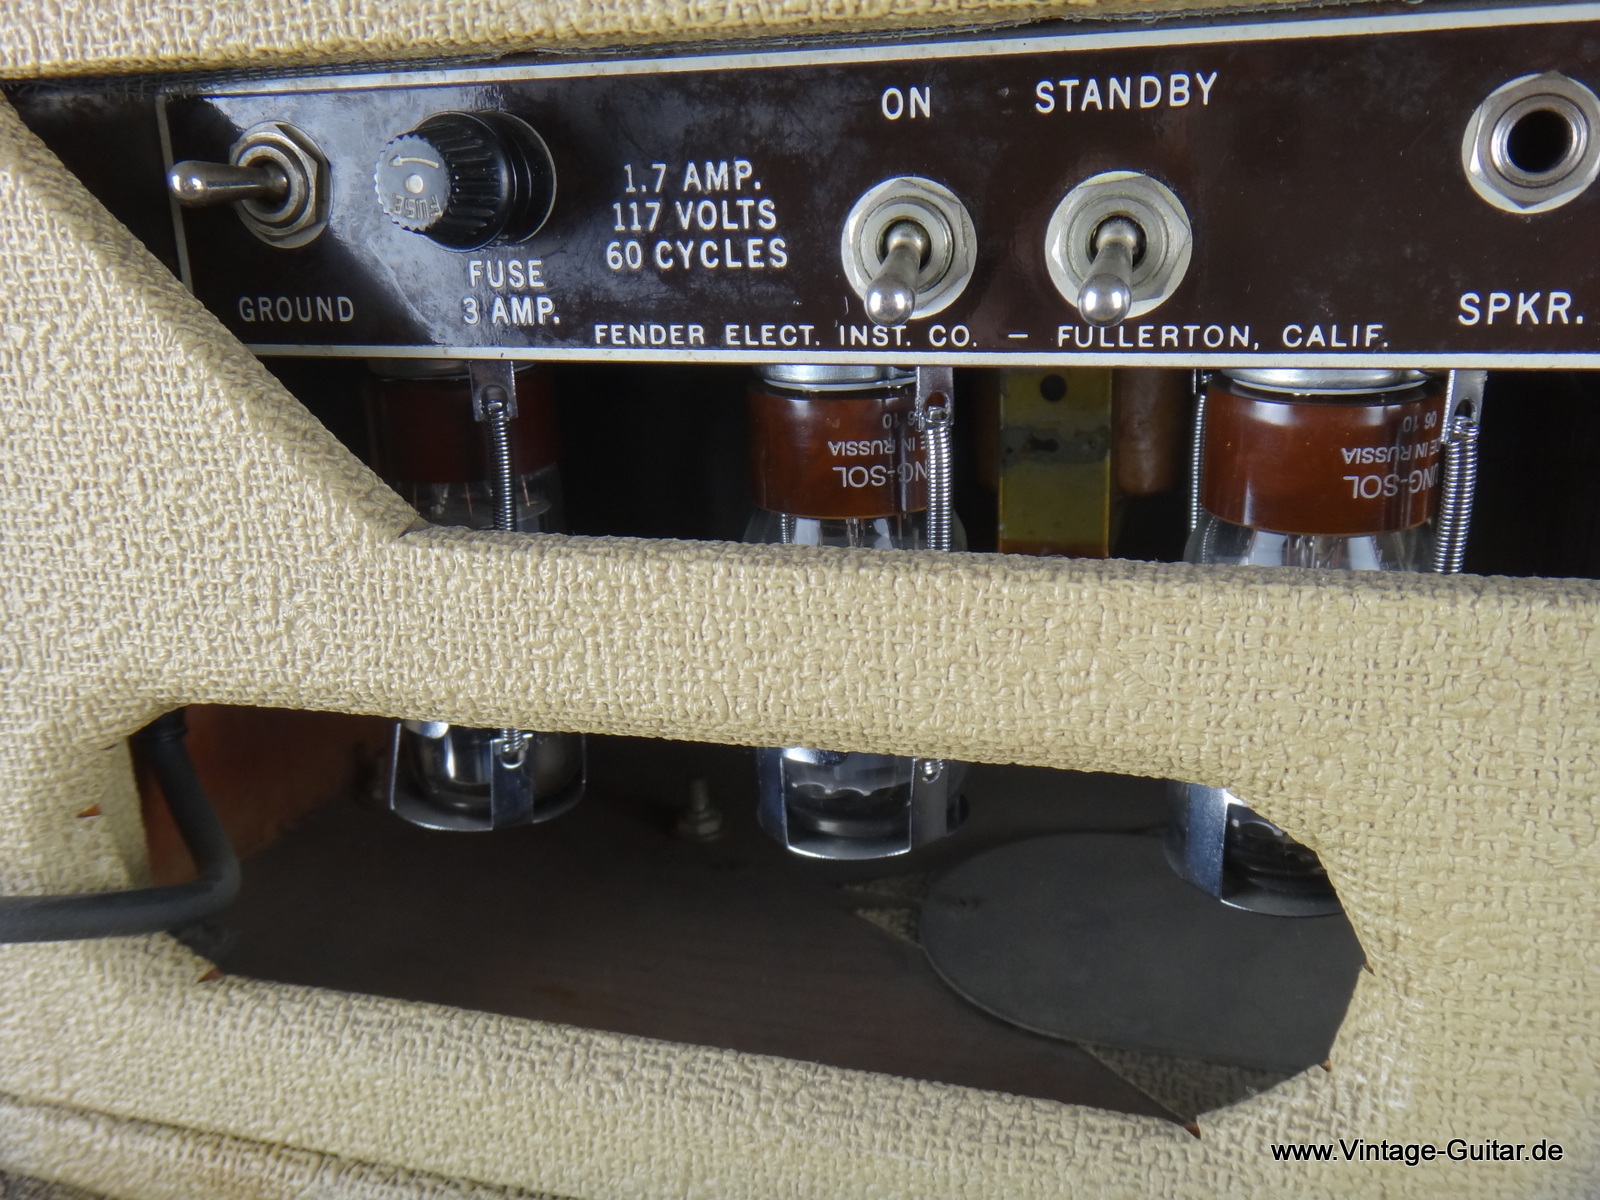 Fender-Bassman-1961-white-tolex-top-and-cabinet-005.JPG